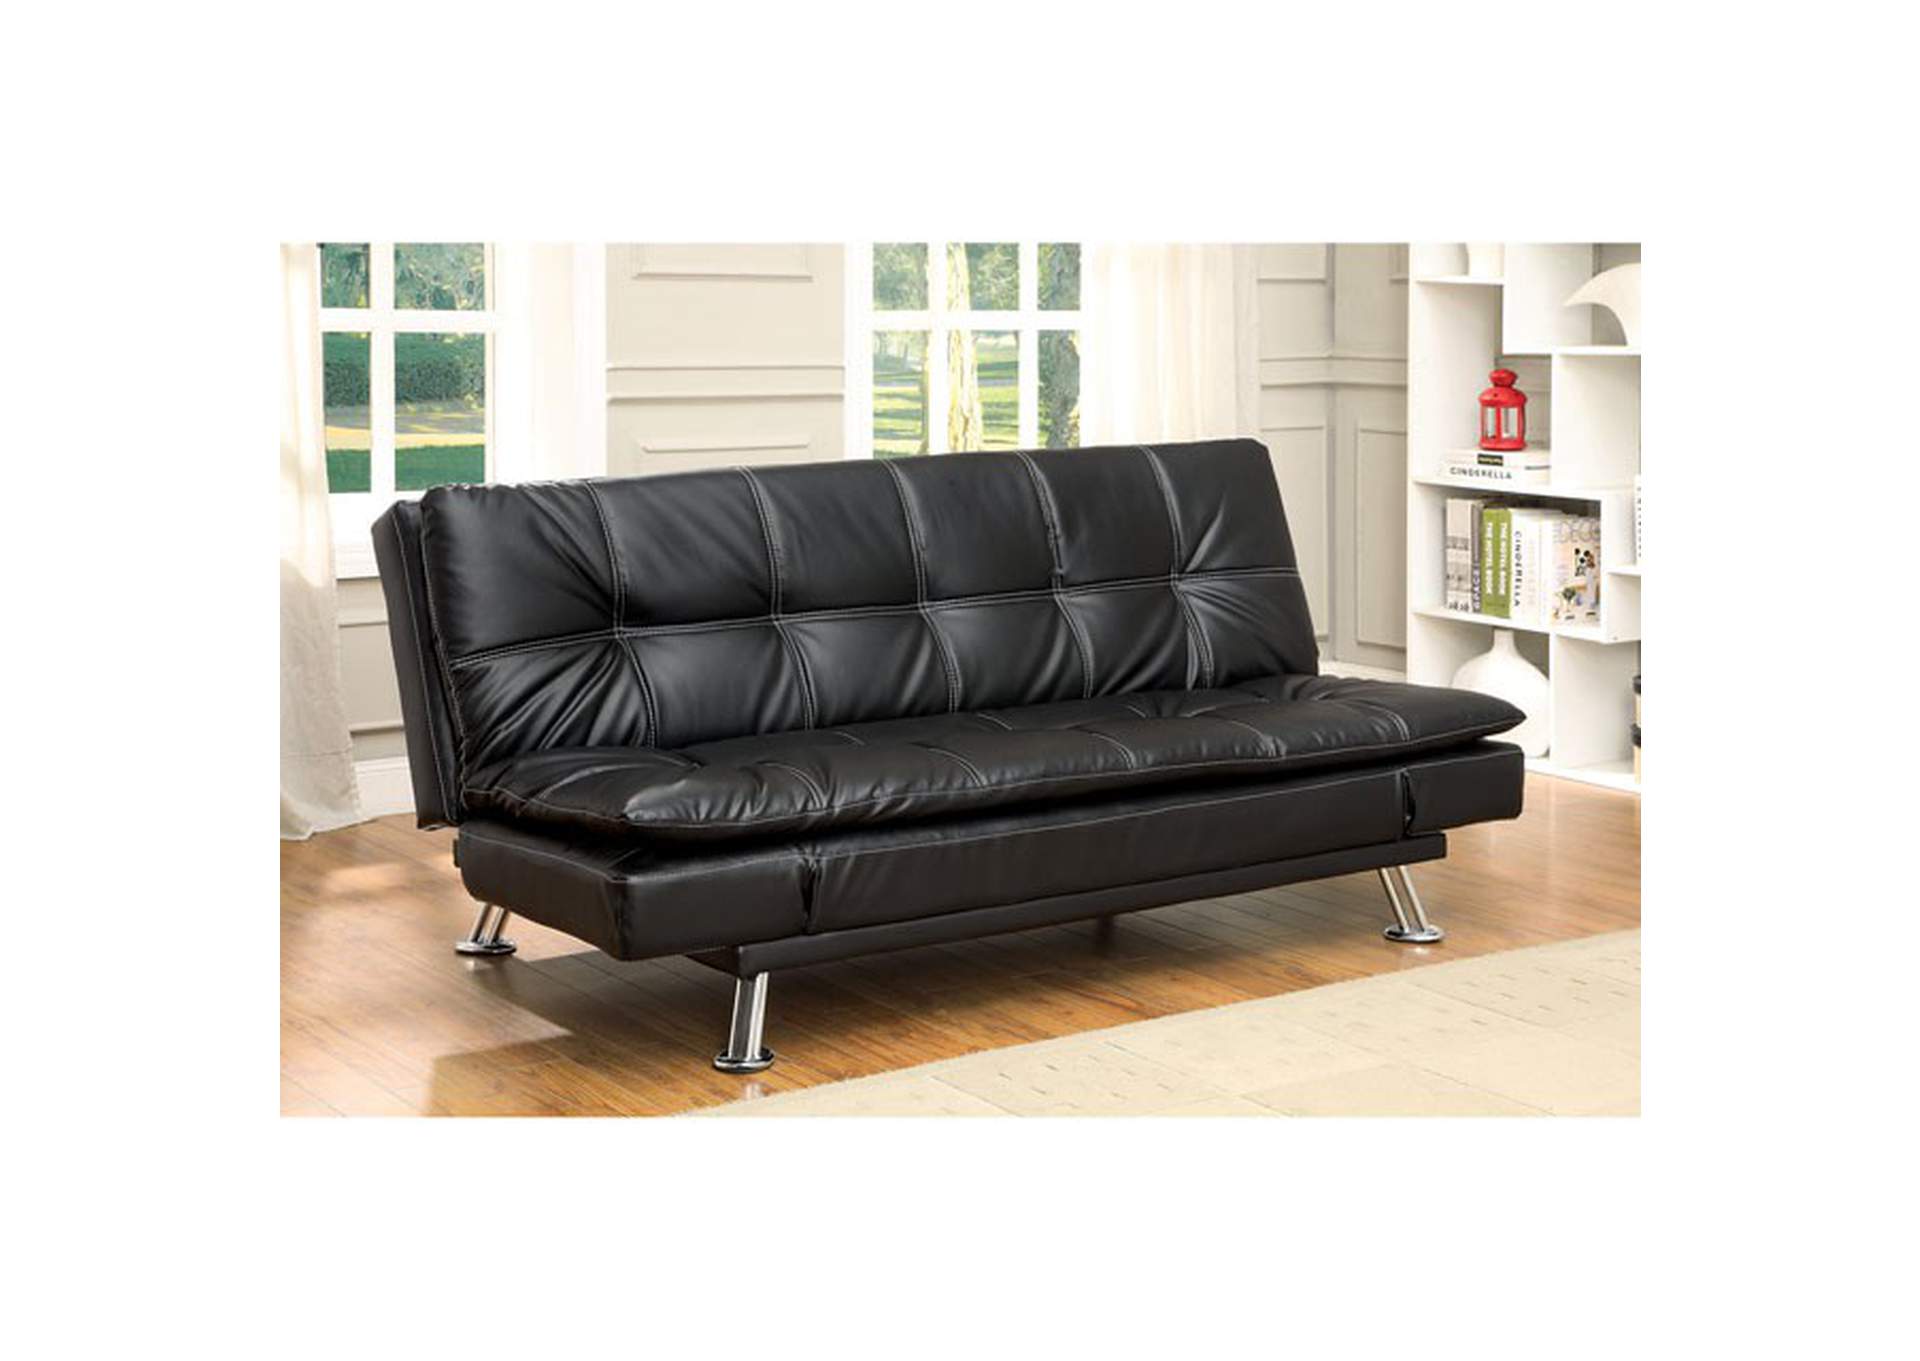 Hauser Futon Sofa,Furniture of America